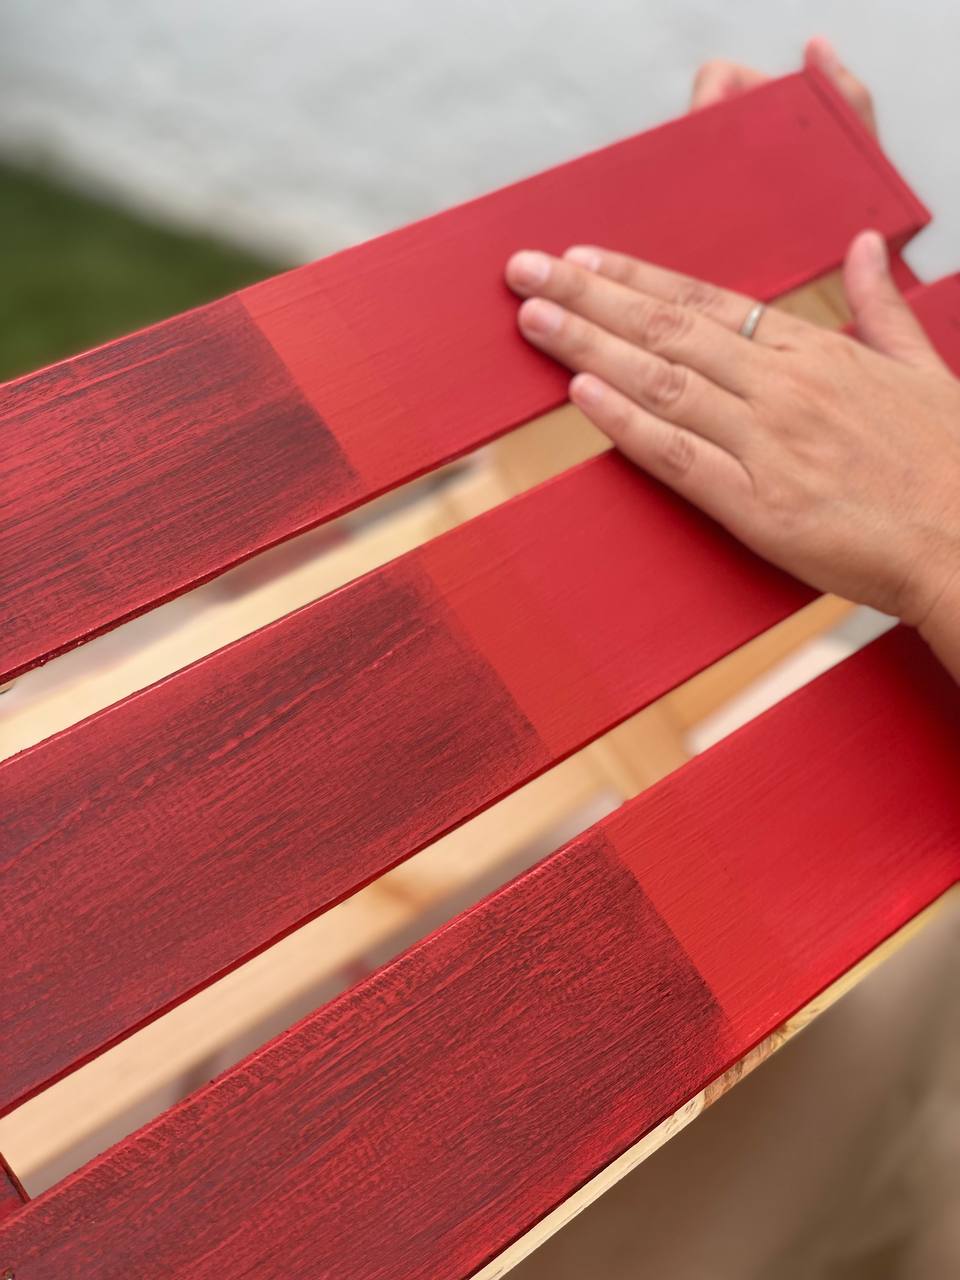 Qué barniz usar para proteger una escalera de madera? - Pinturas Ydeco